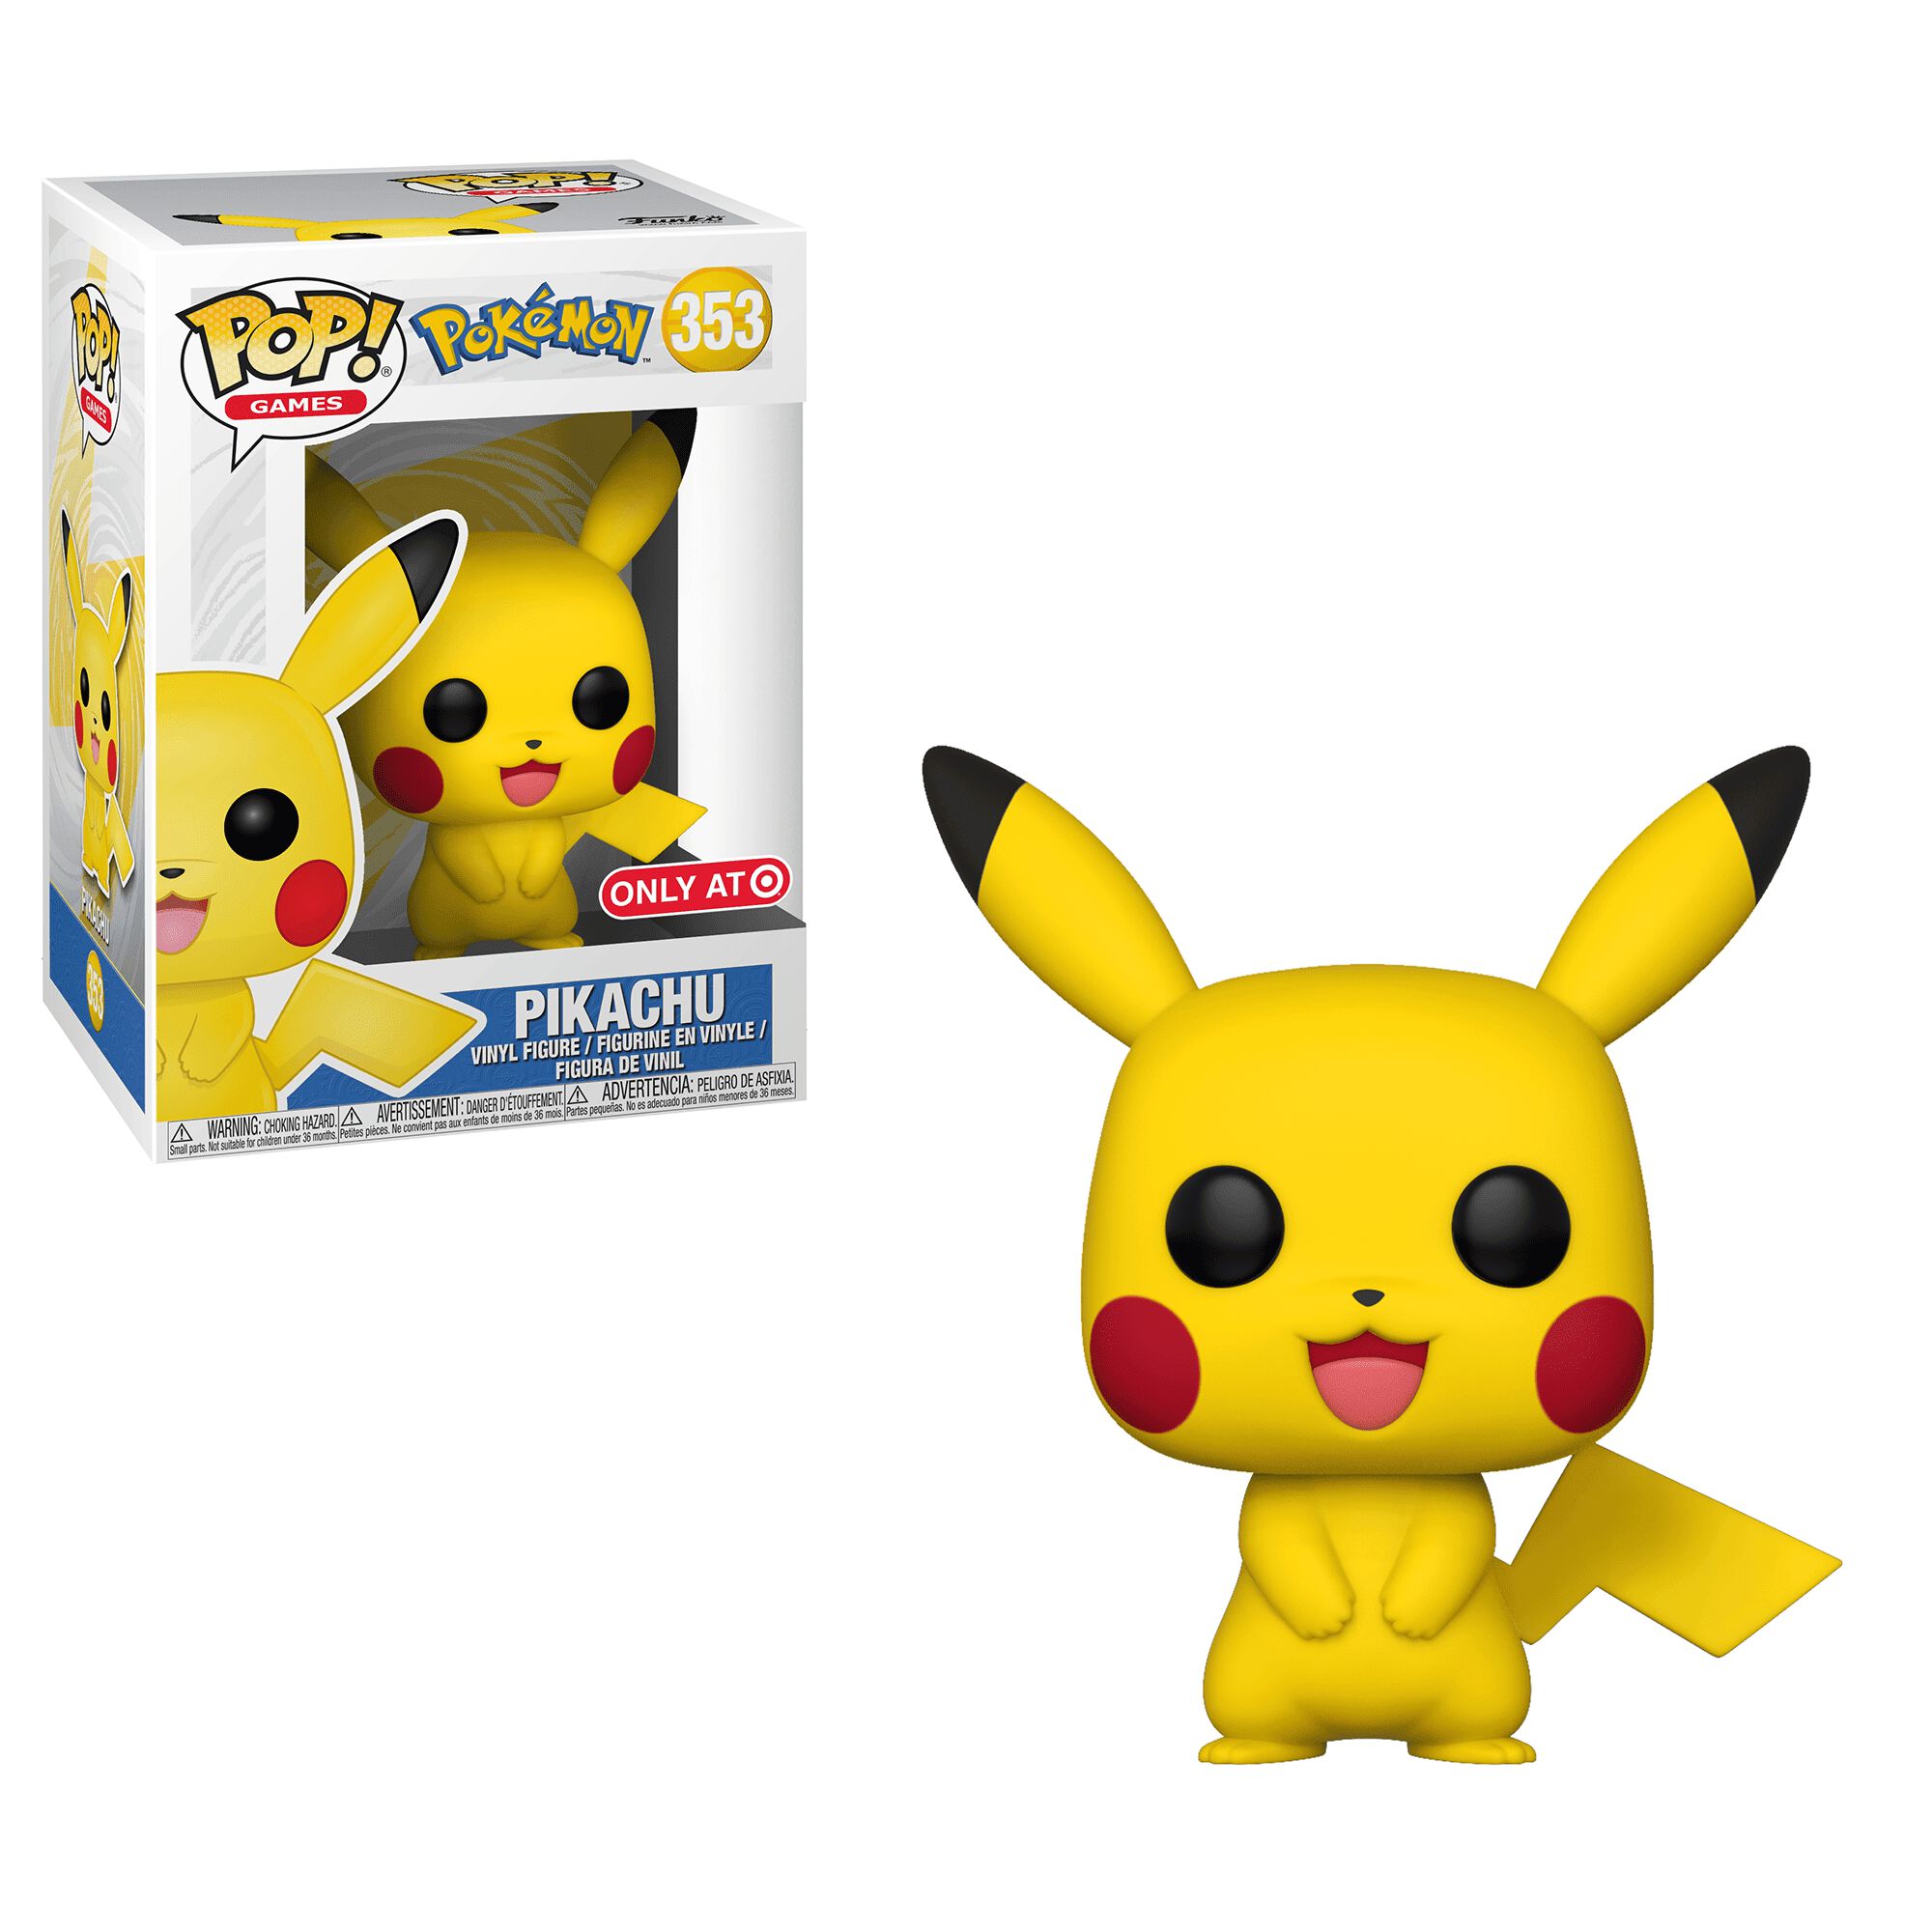 Coming Soon: Target Exclusive Pikachu Pop!